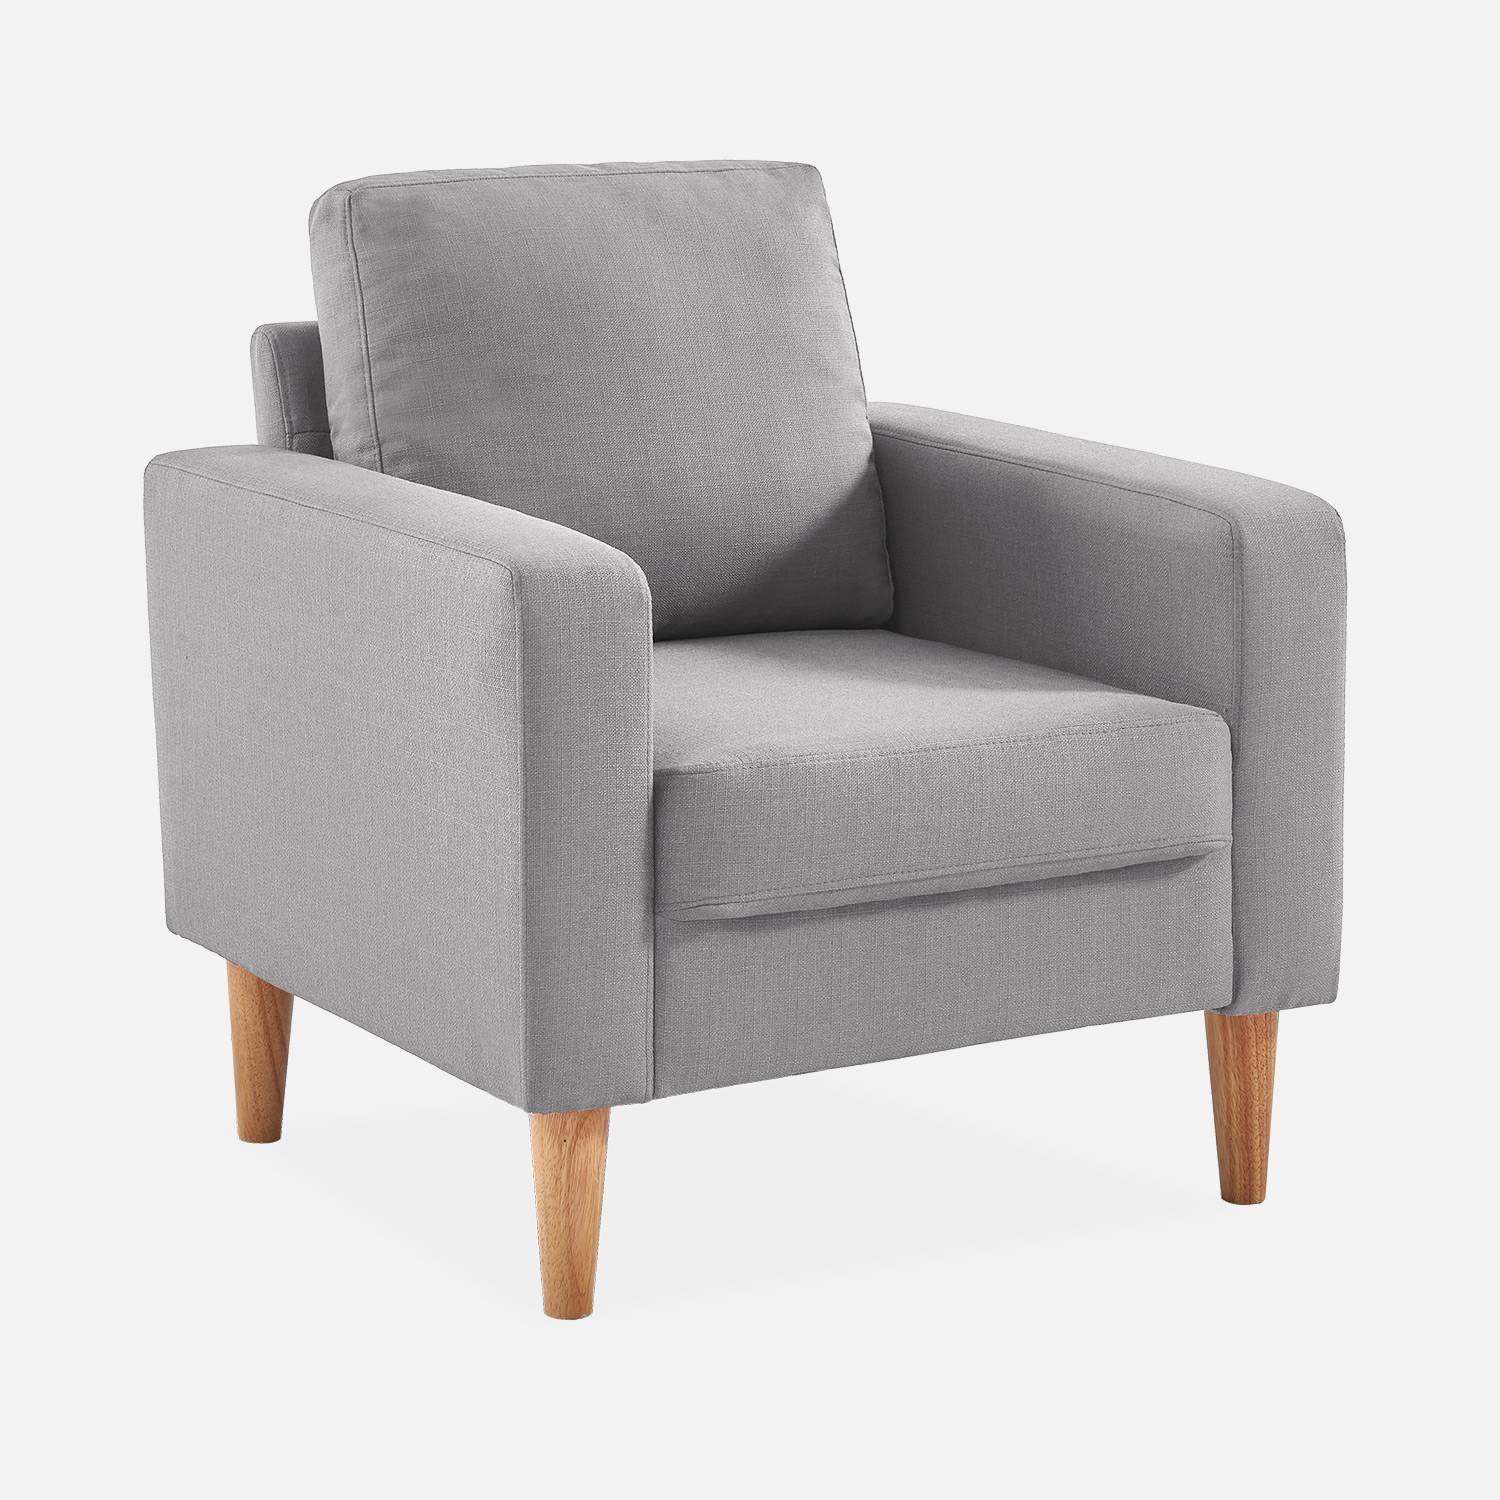 Lichtgrijs stoffen zetel - Bjorn - 1-zits sofa met houten poten, Scandinavische stijl Photo2